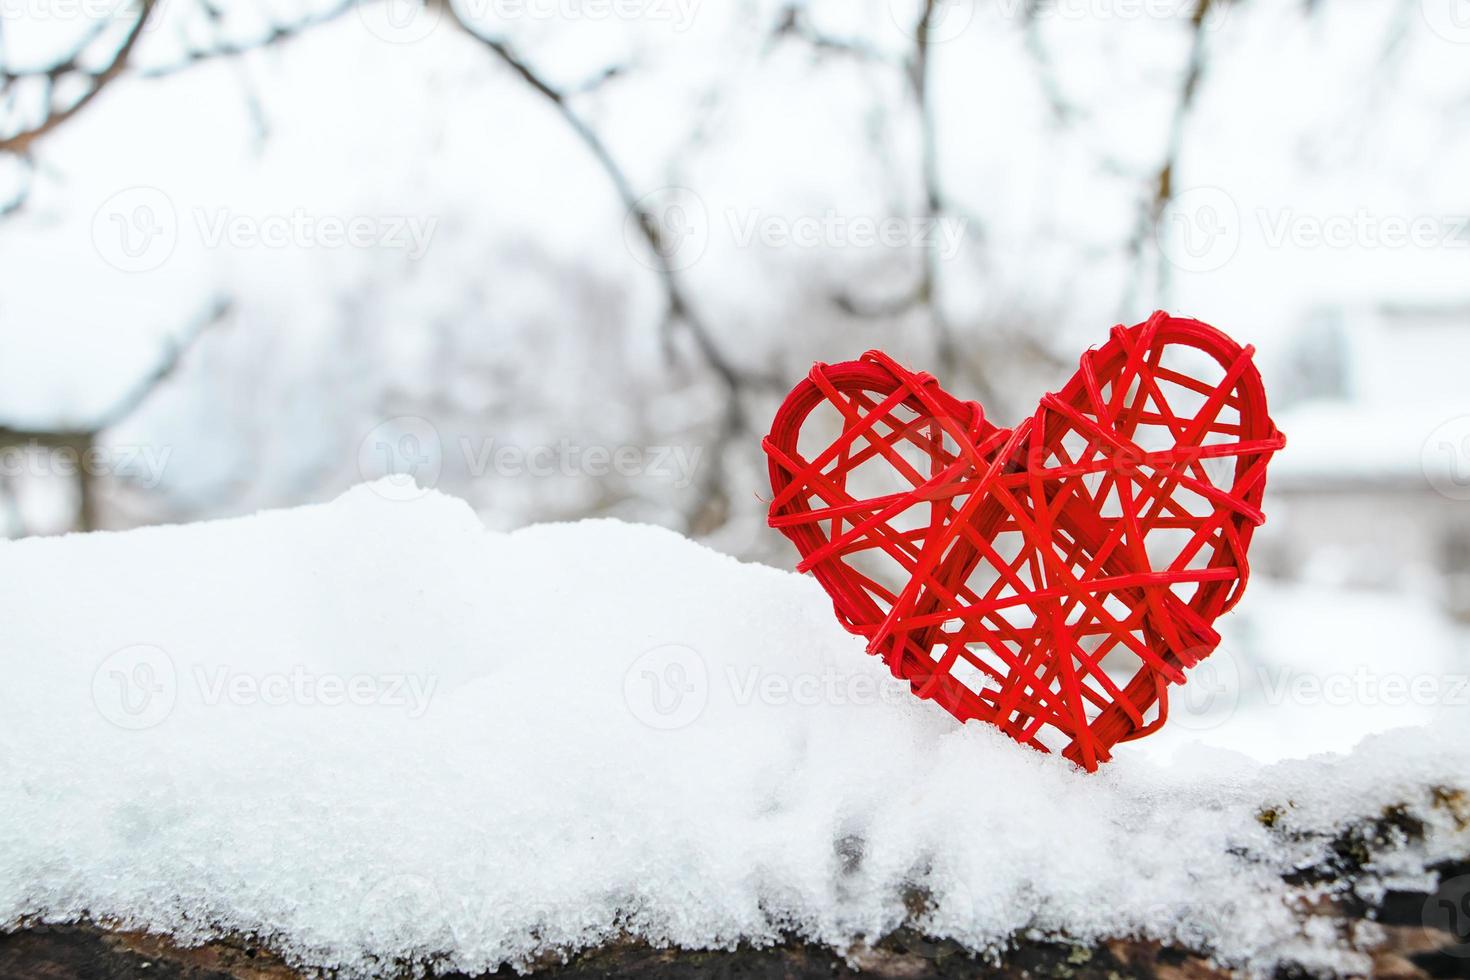 coração vermelho de madeira no fundo de galhos de árvores cobertas de neve. dia dos namorados ecológico. foto